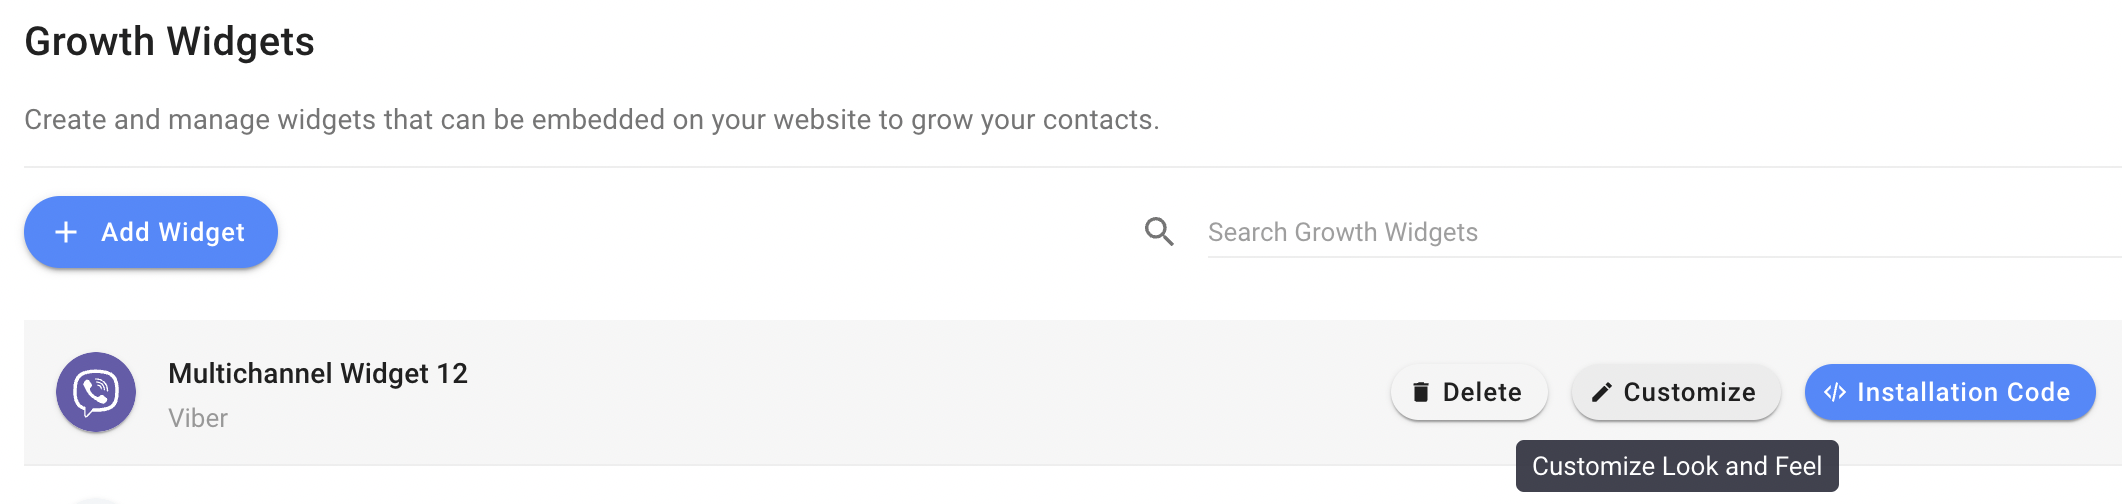 captura de pantalla de la personalización del widget de crecimiento